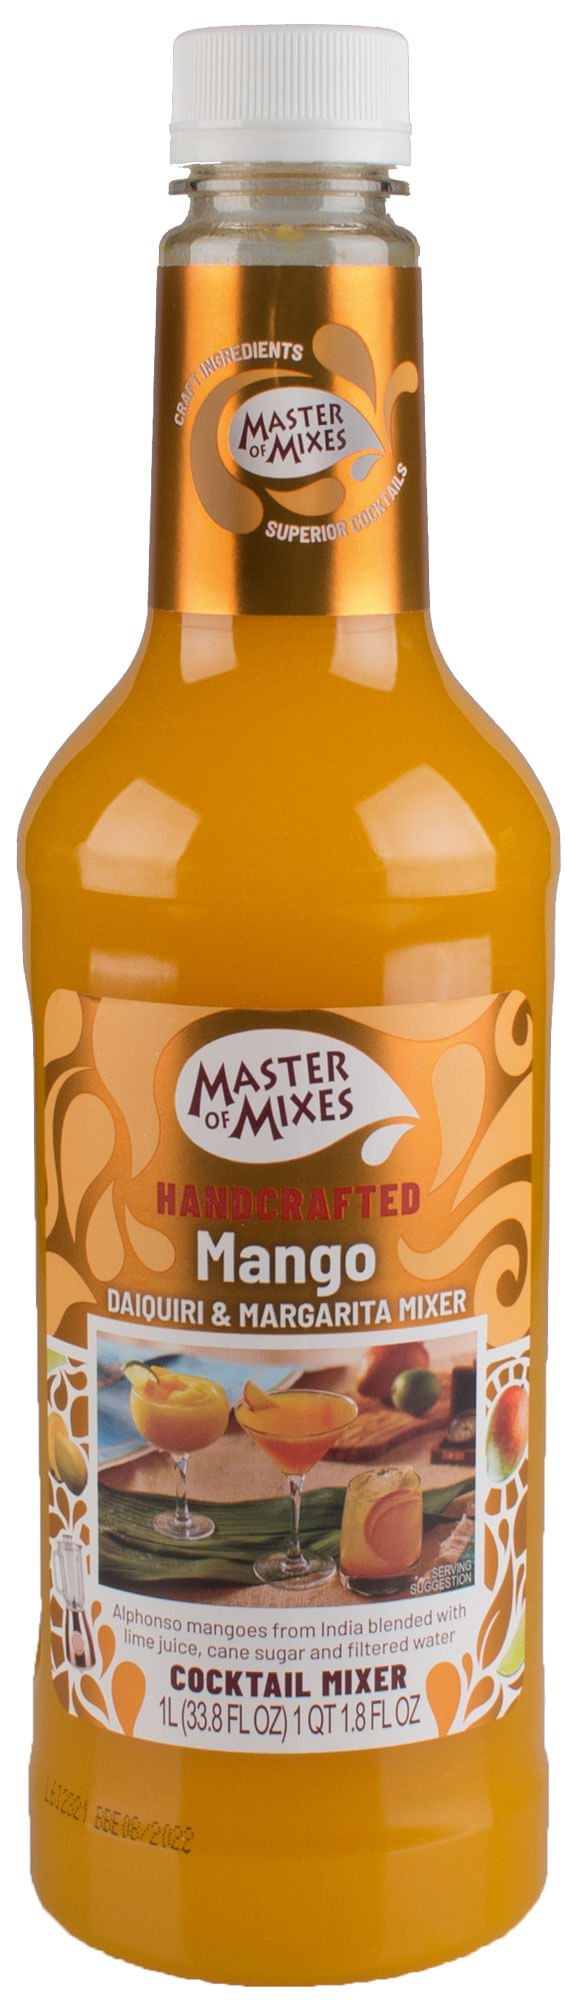 Mango Margarita Mix, Masters of Mixes - 1l